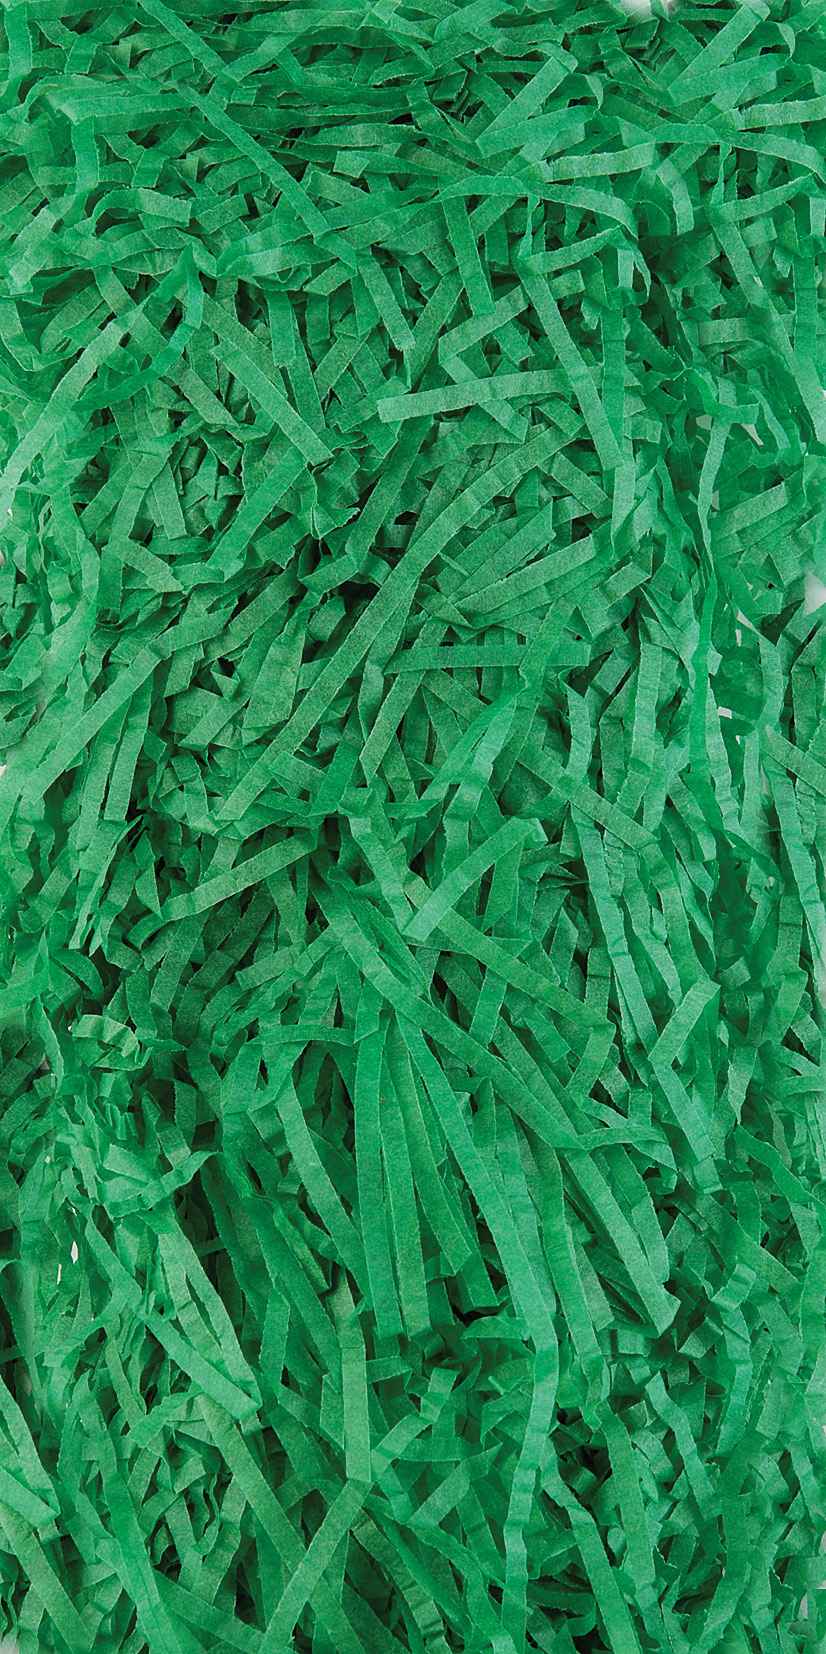 Shredded Tissue Paper 20g - Medium Green